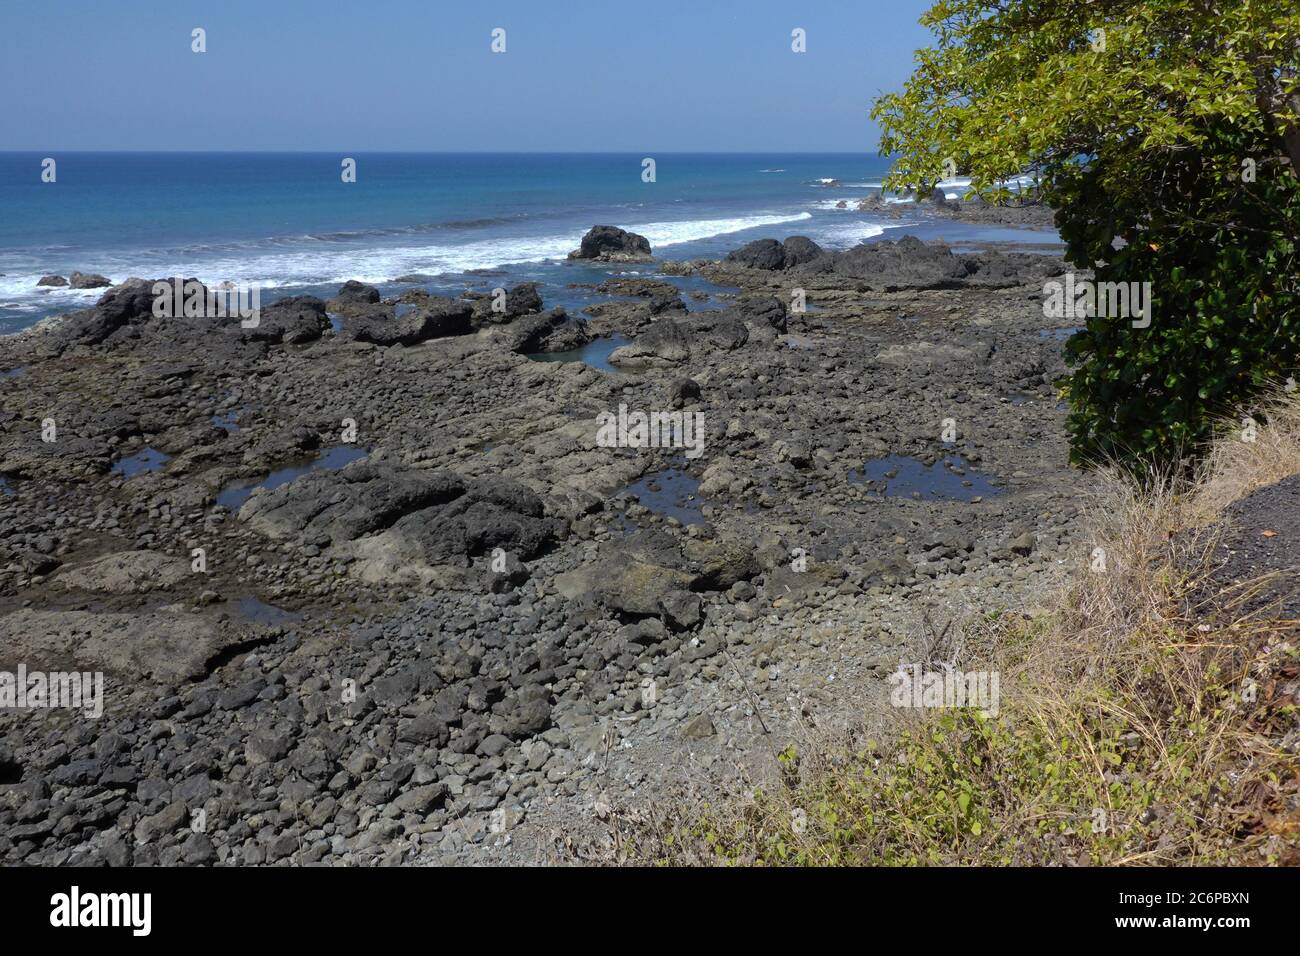 Stony coast at Playa Hermosa in Costa Rica, Central America Stock Photo